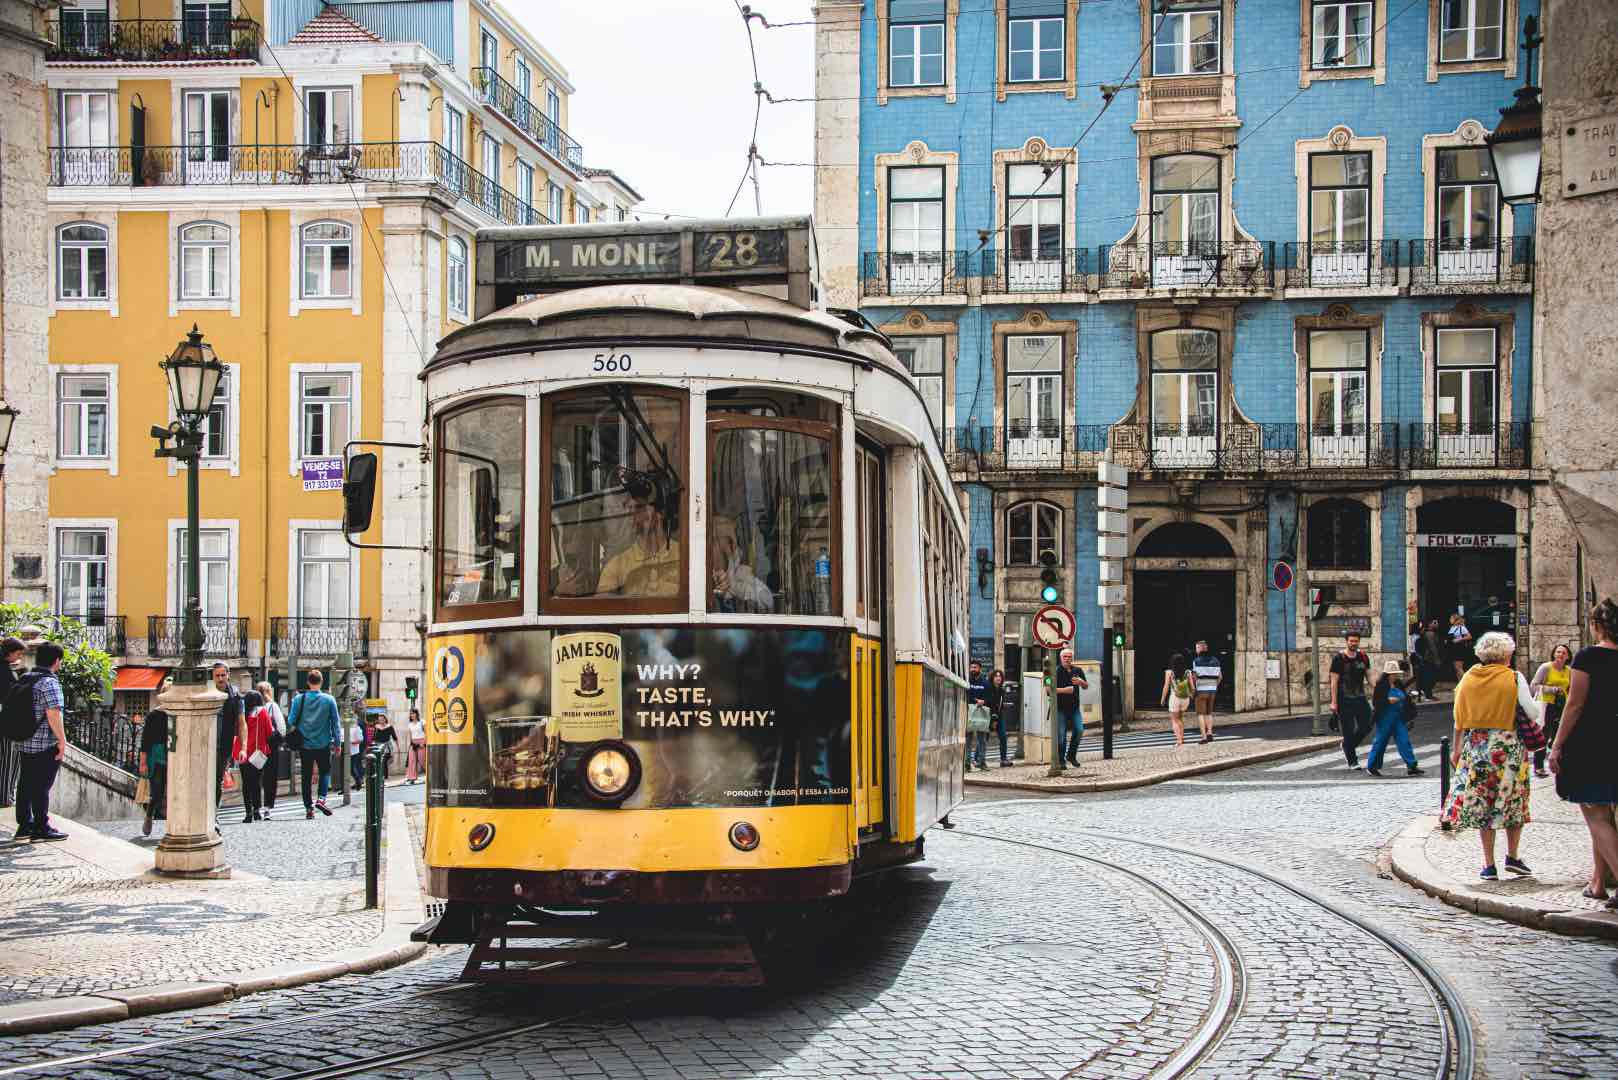 Lisbon number 28 tram